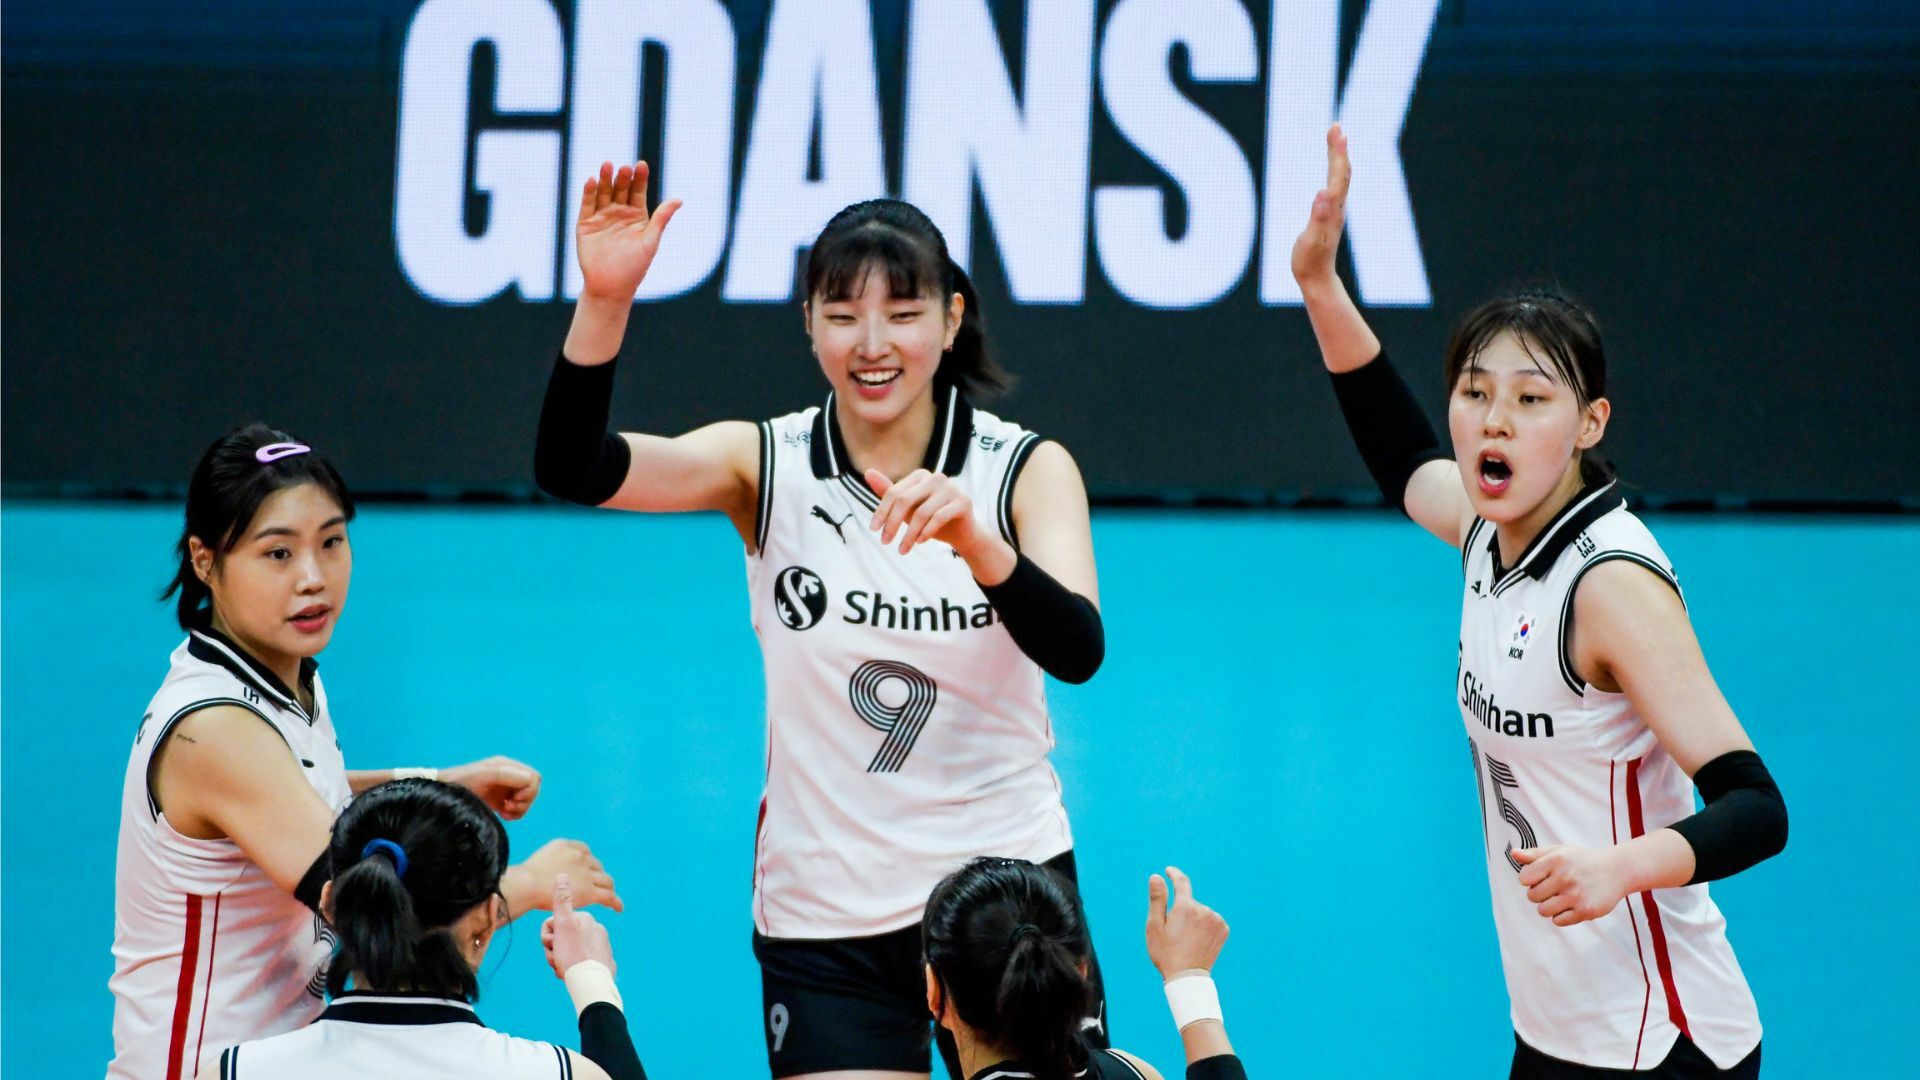 ตารางคะแนนวอลเลย์บอลหญิงไทยหลังชนะเกาหลีใต้